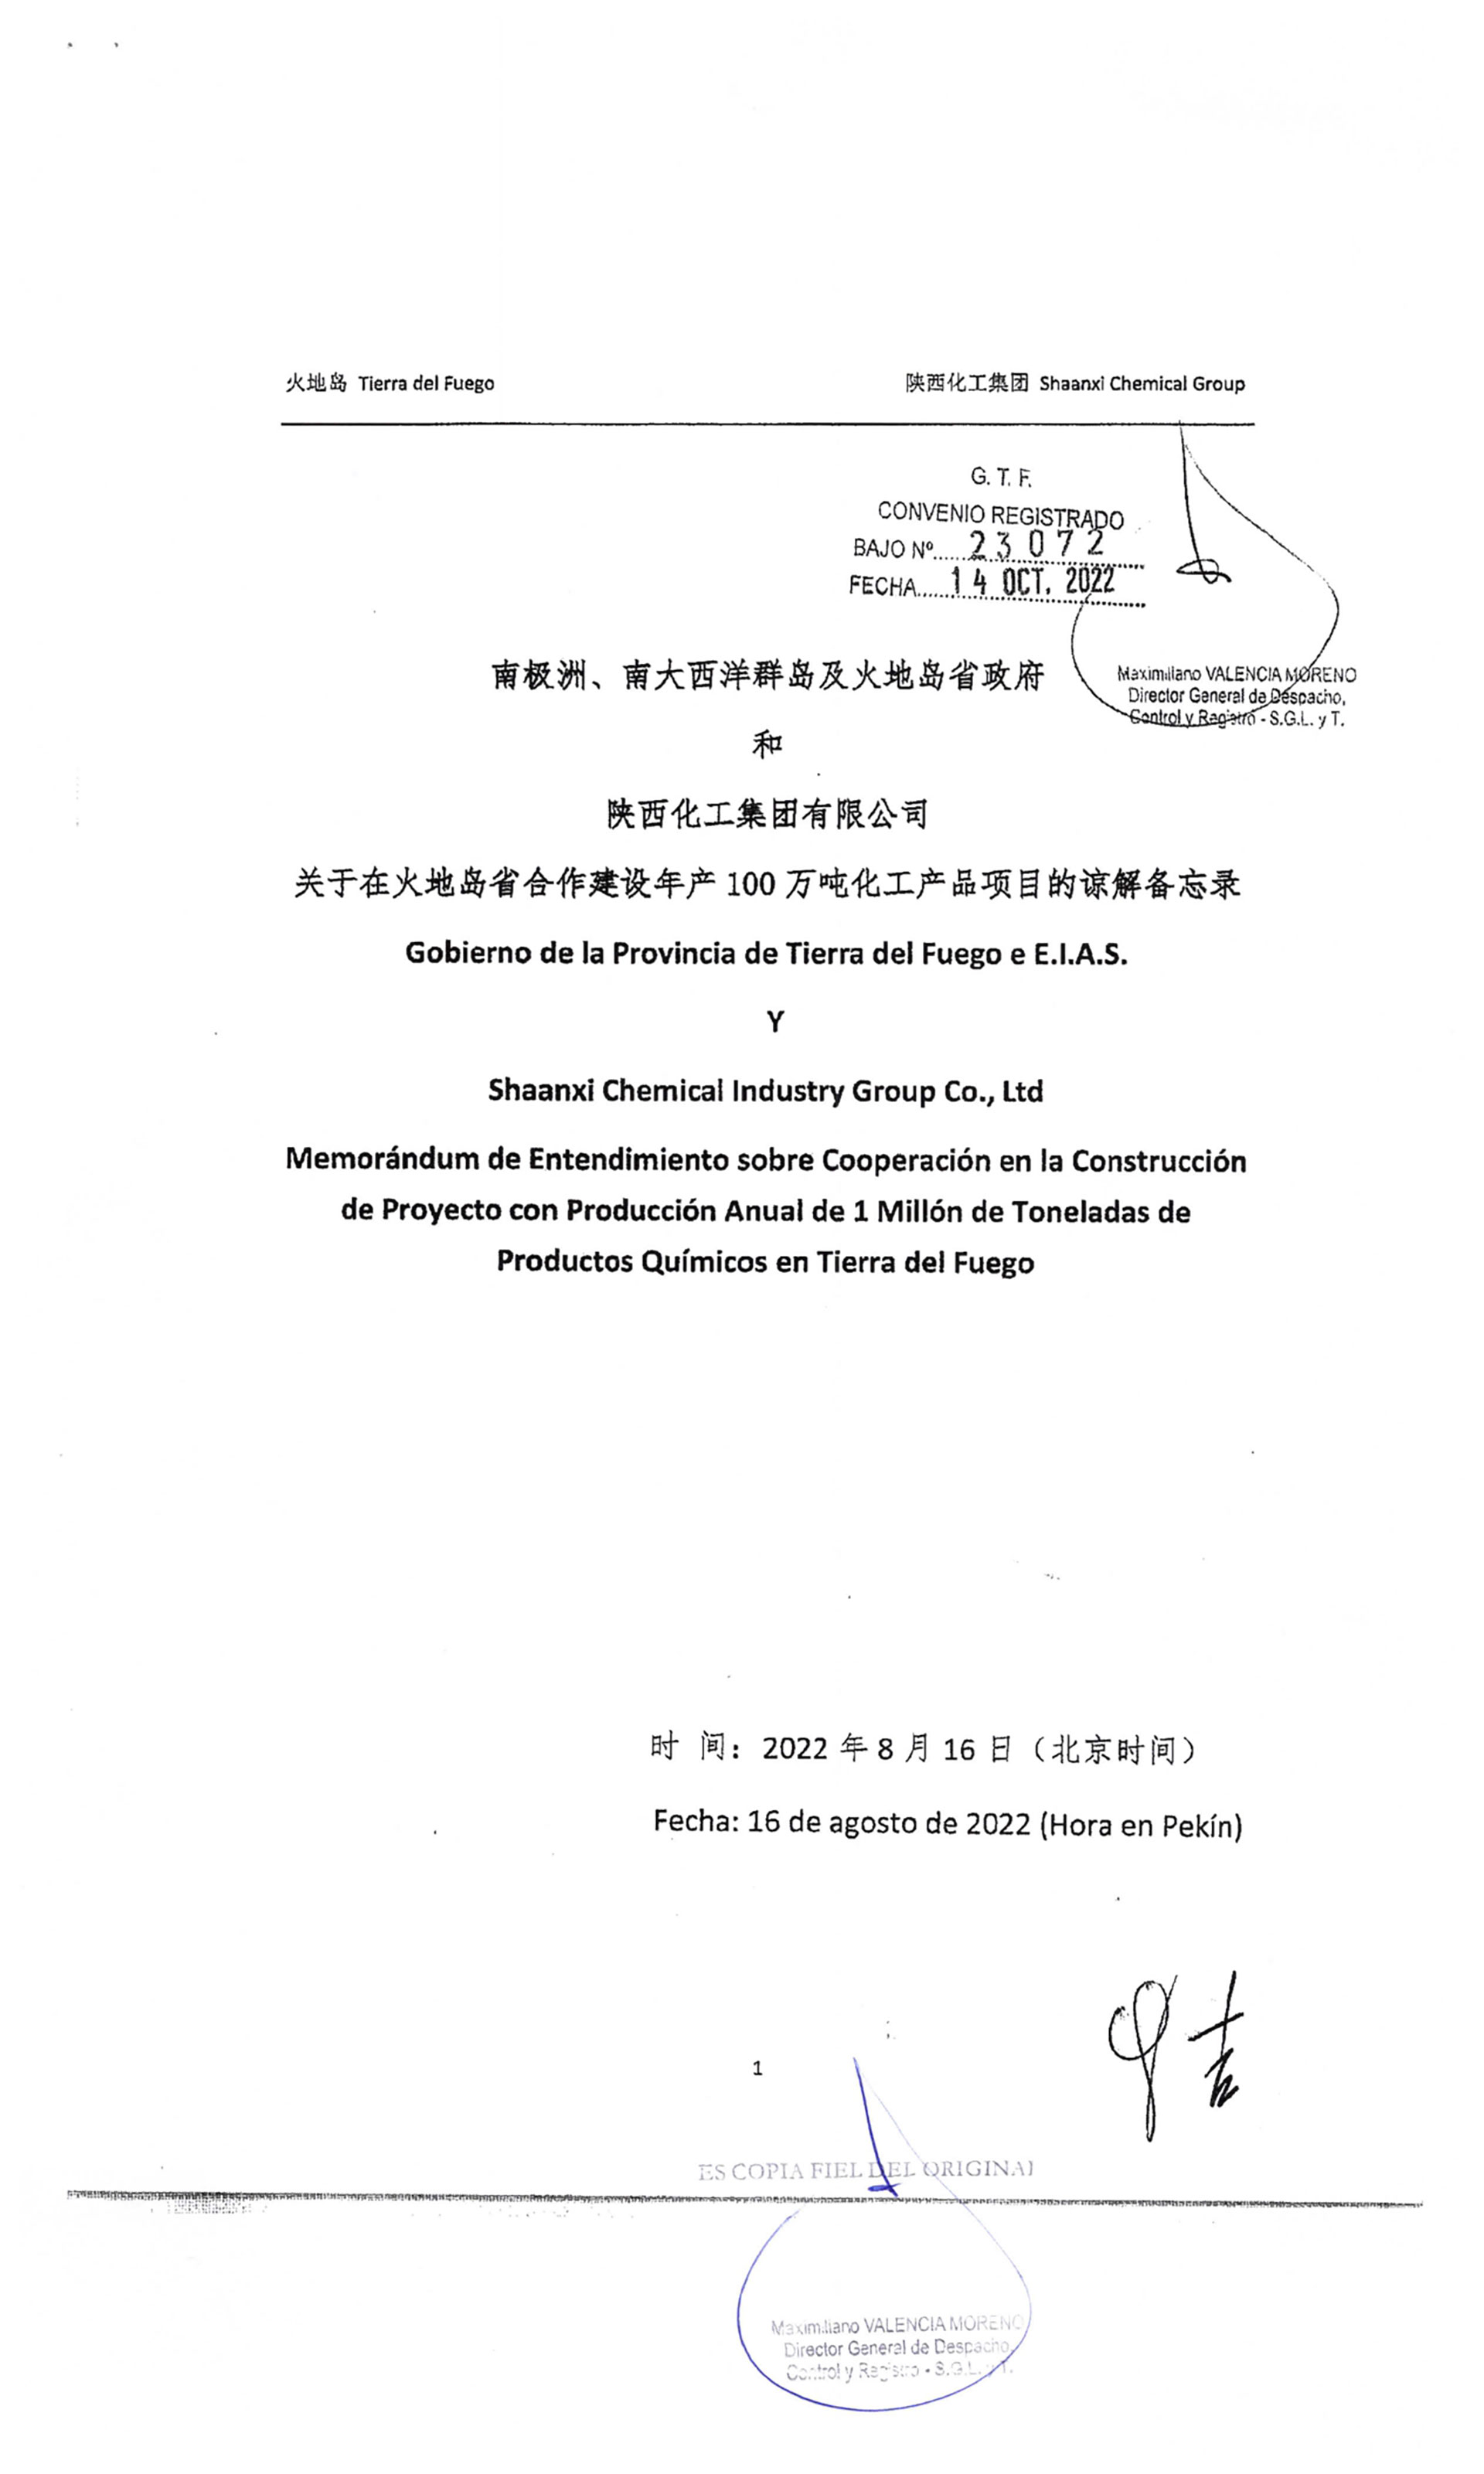 La hoja del decreto que indica que, formalmente, la empresa detrás del proyecto es Shaanxi Chemical Industry Group
